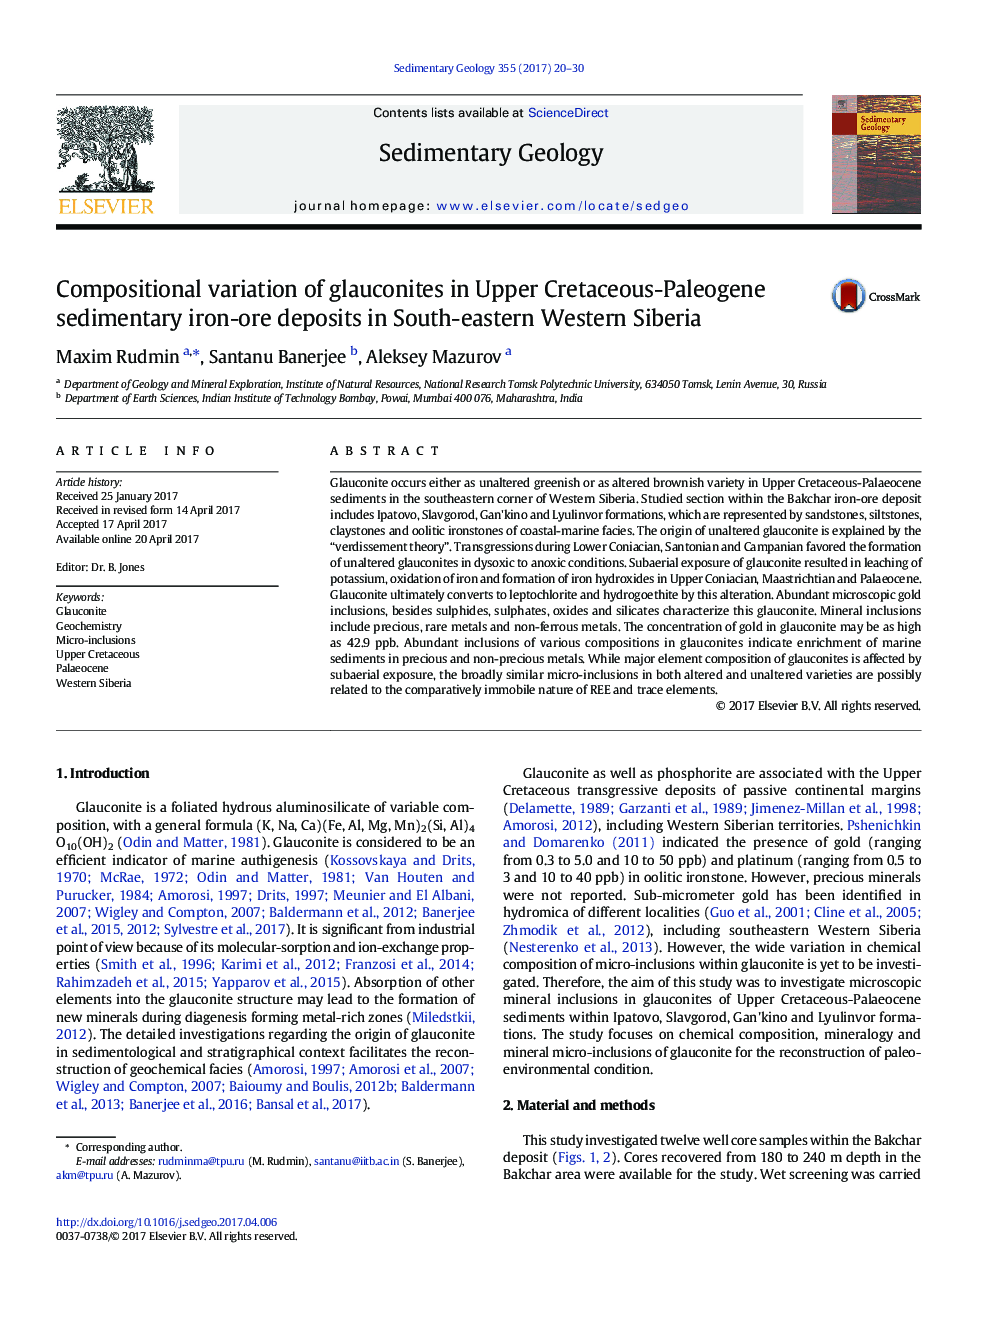 تنوع ترکیبات گلوکونیت ها در رسوبات کادمیوم-پالئوژن در کانسارهای سنگ آهن رسوبی در جنوب غربی سیبری غربی